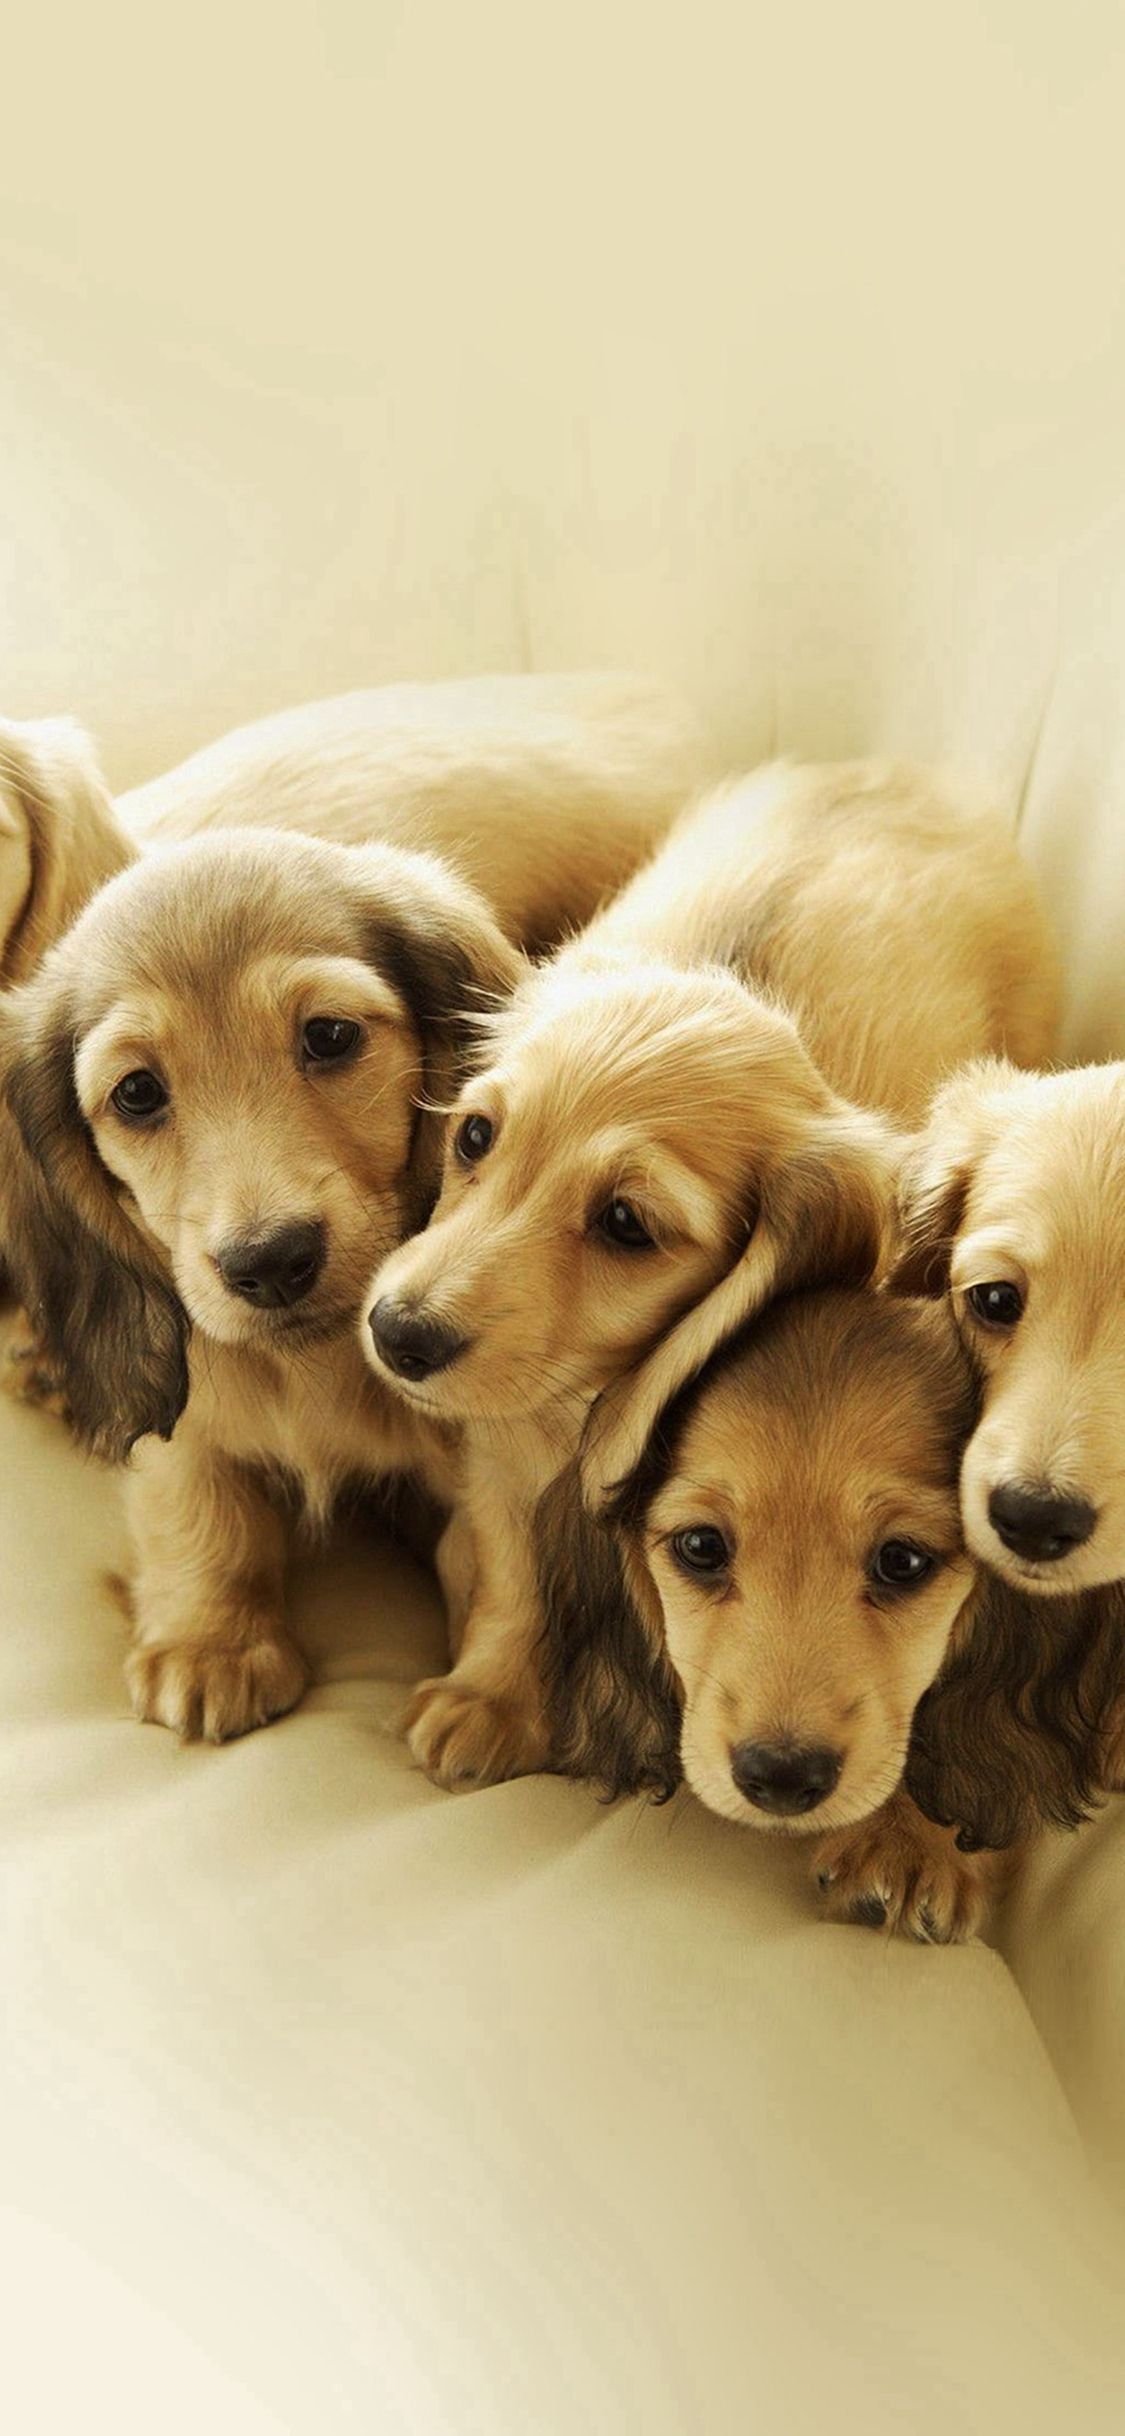 تصویر بچه سگ های خوشگل برای زمینه آیفون اندروید